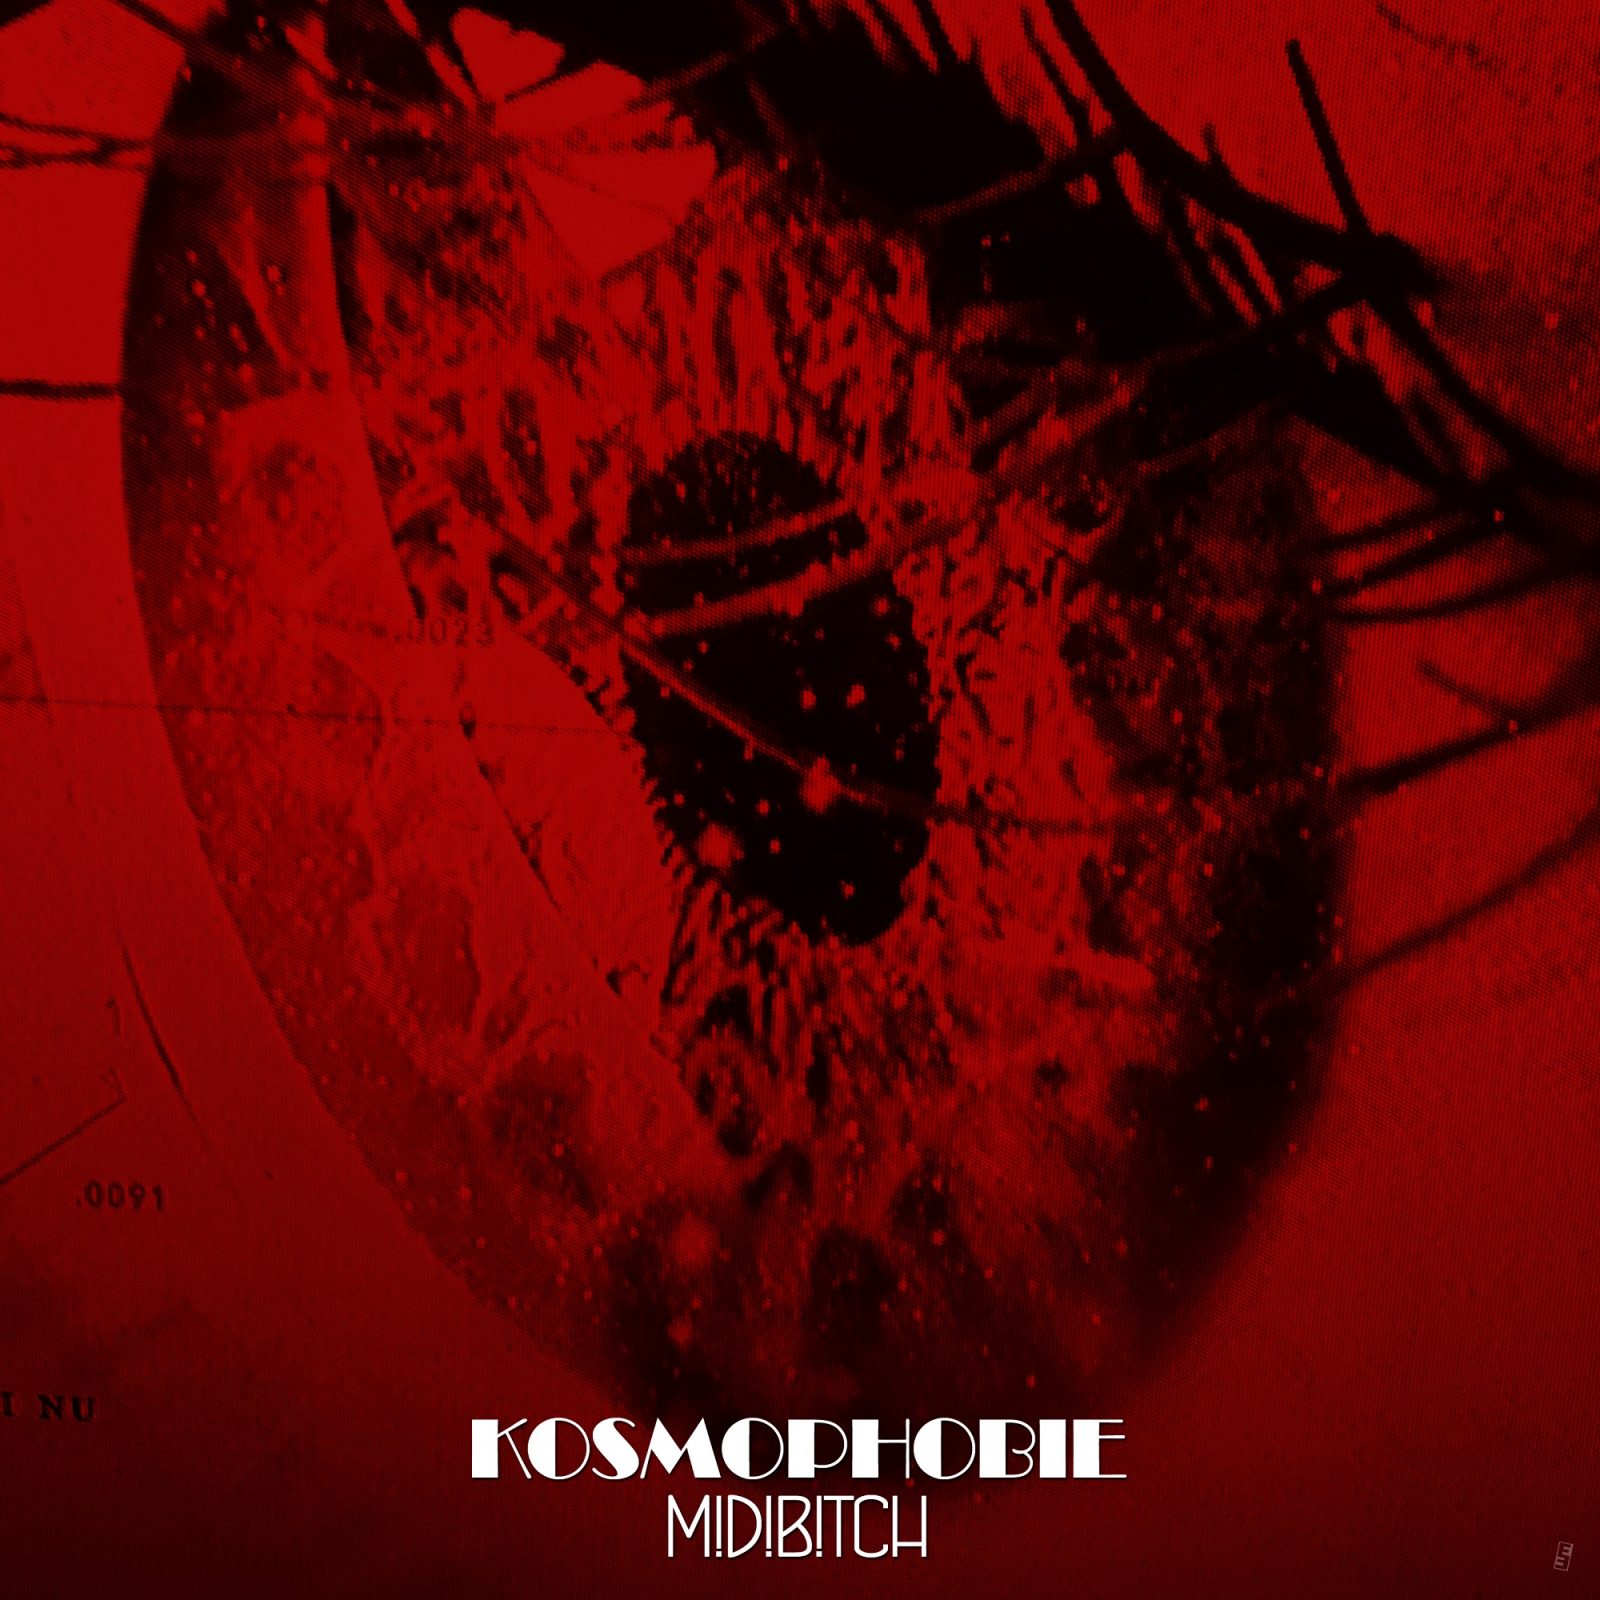 Midi Bitch „Kosmophobie“ – Album 2019 – Cover: Frza